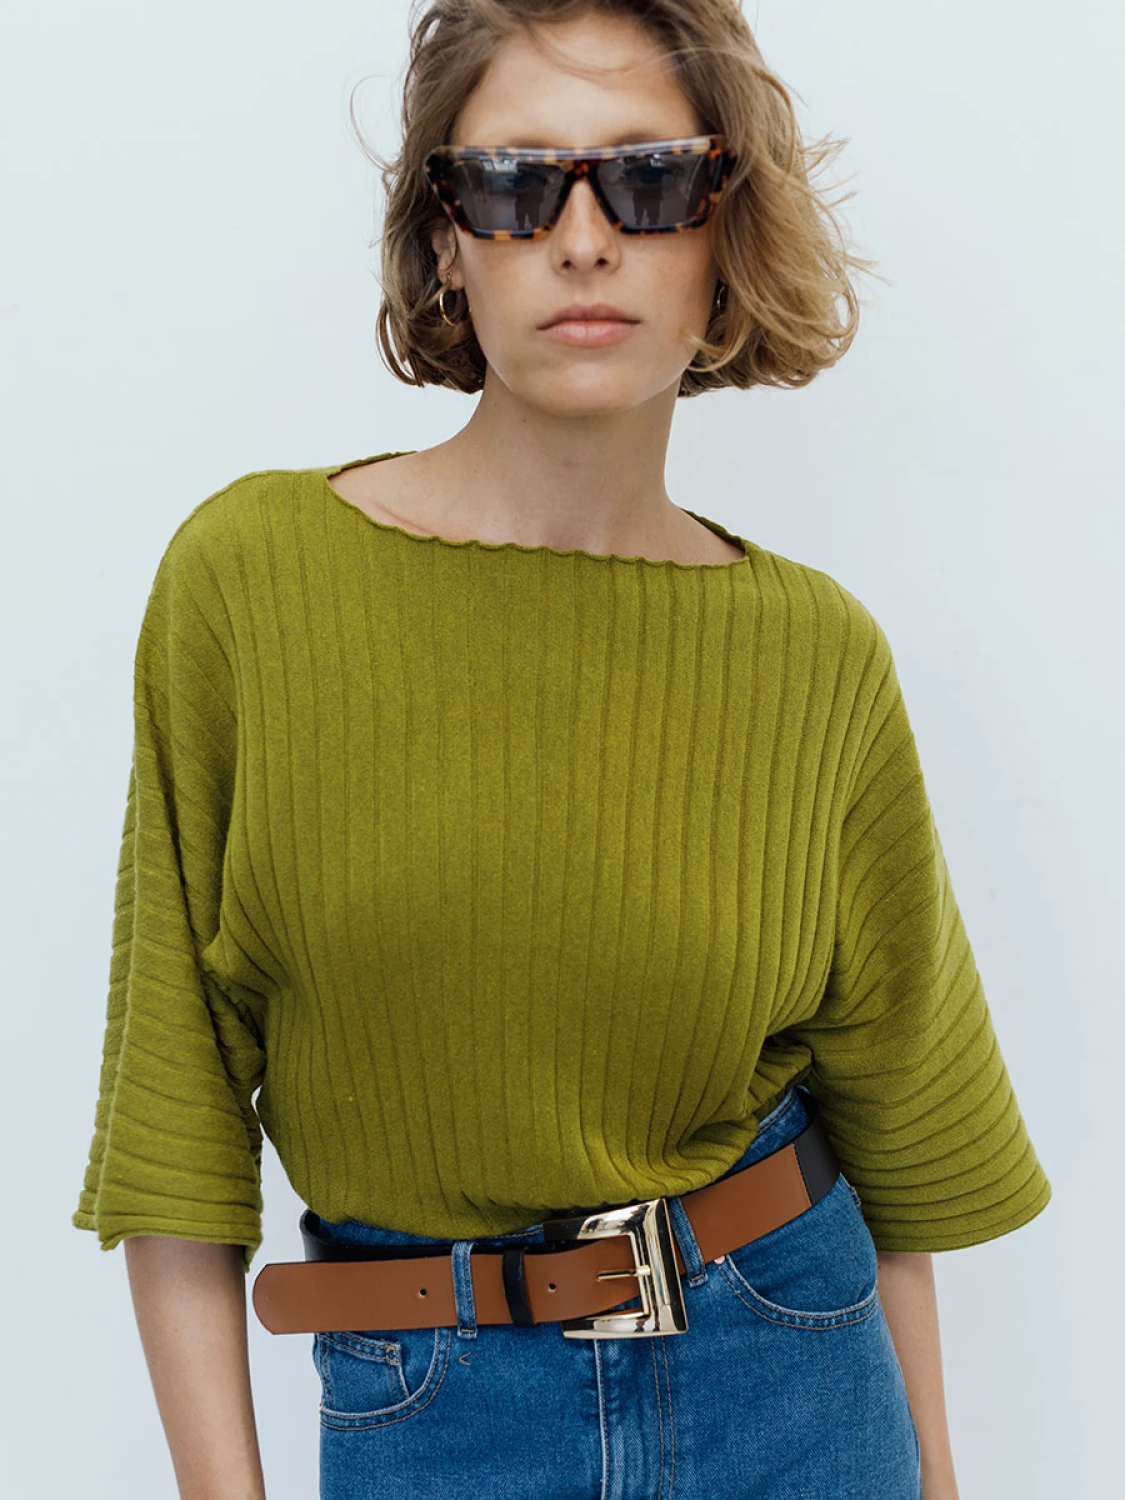 Sweater Cord verde oliva l